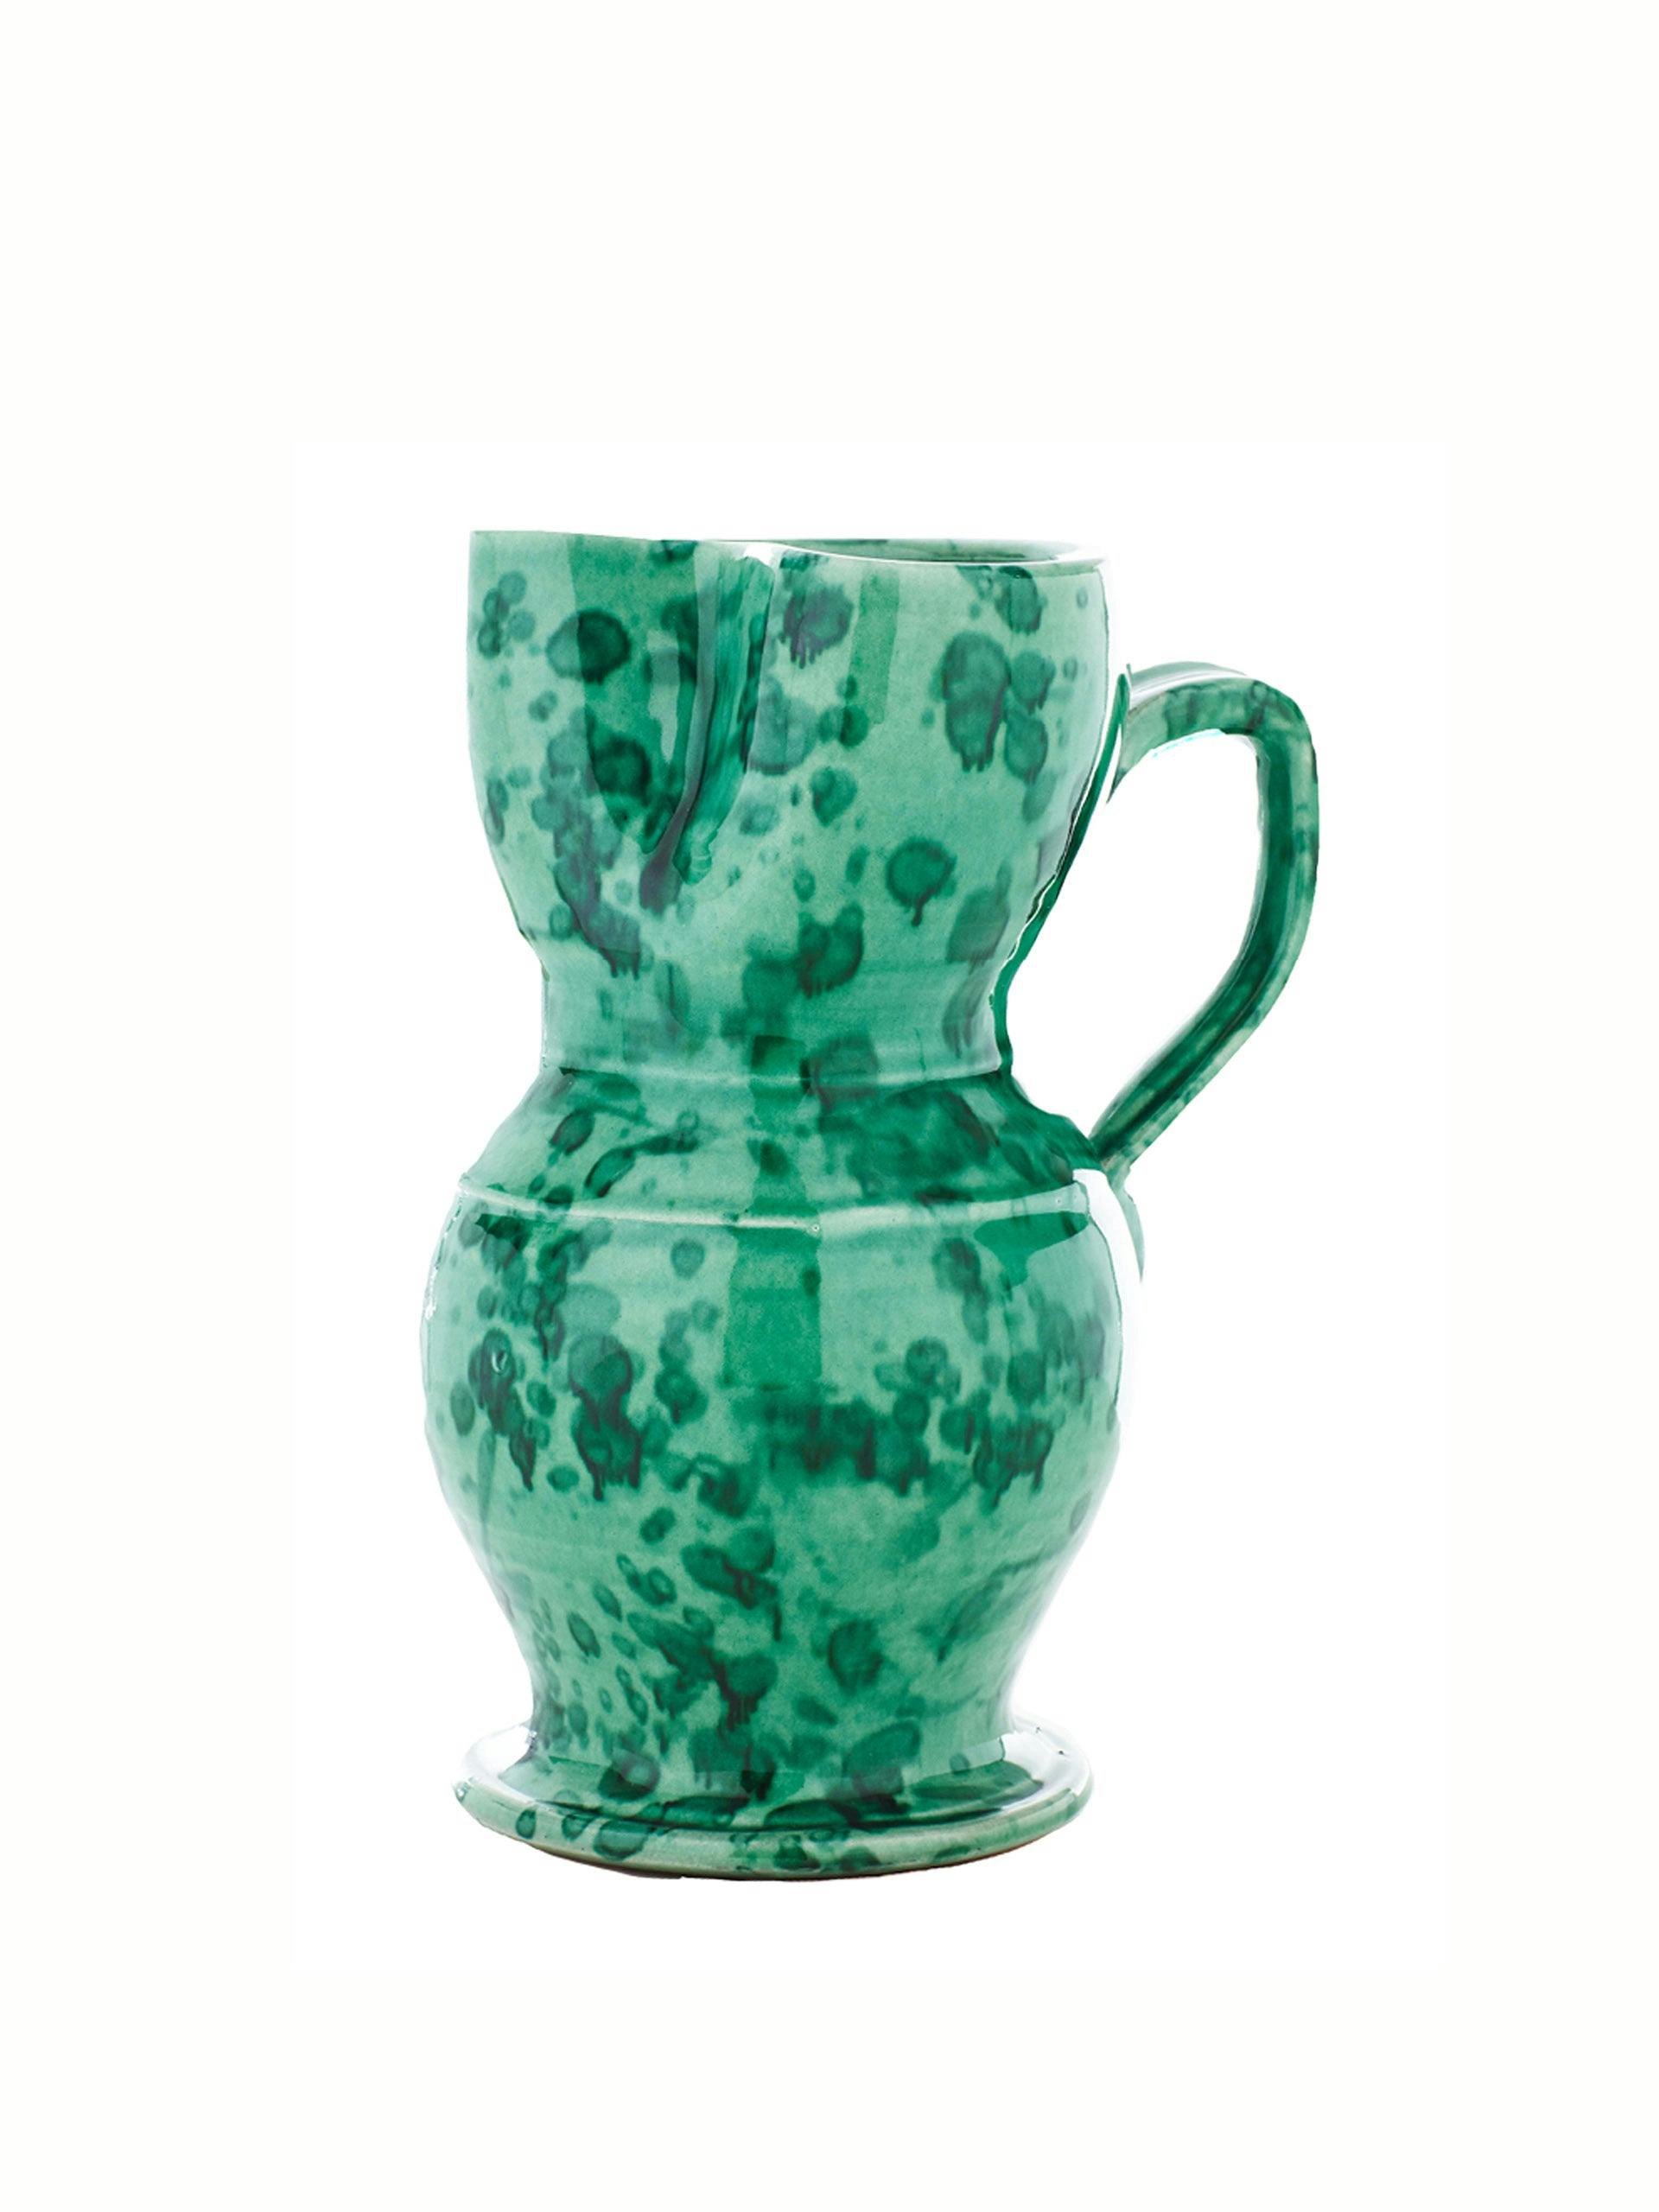 Green handmade pitcher